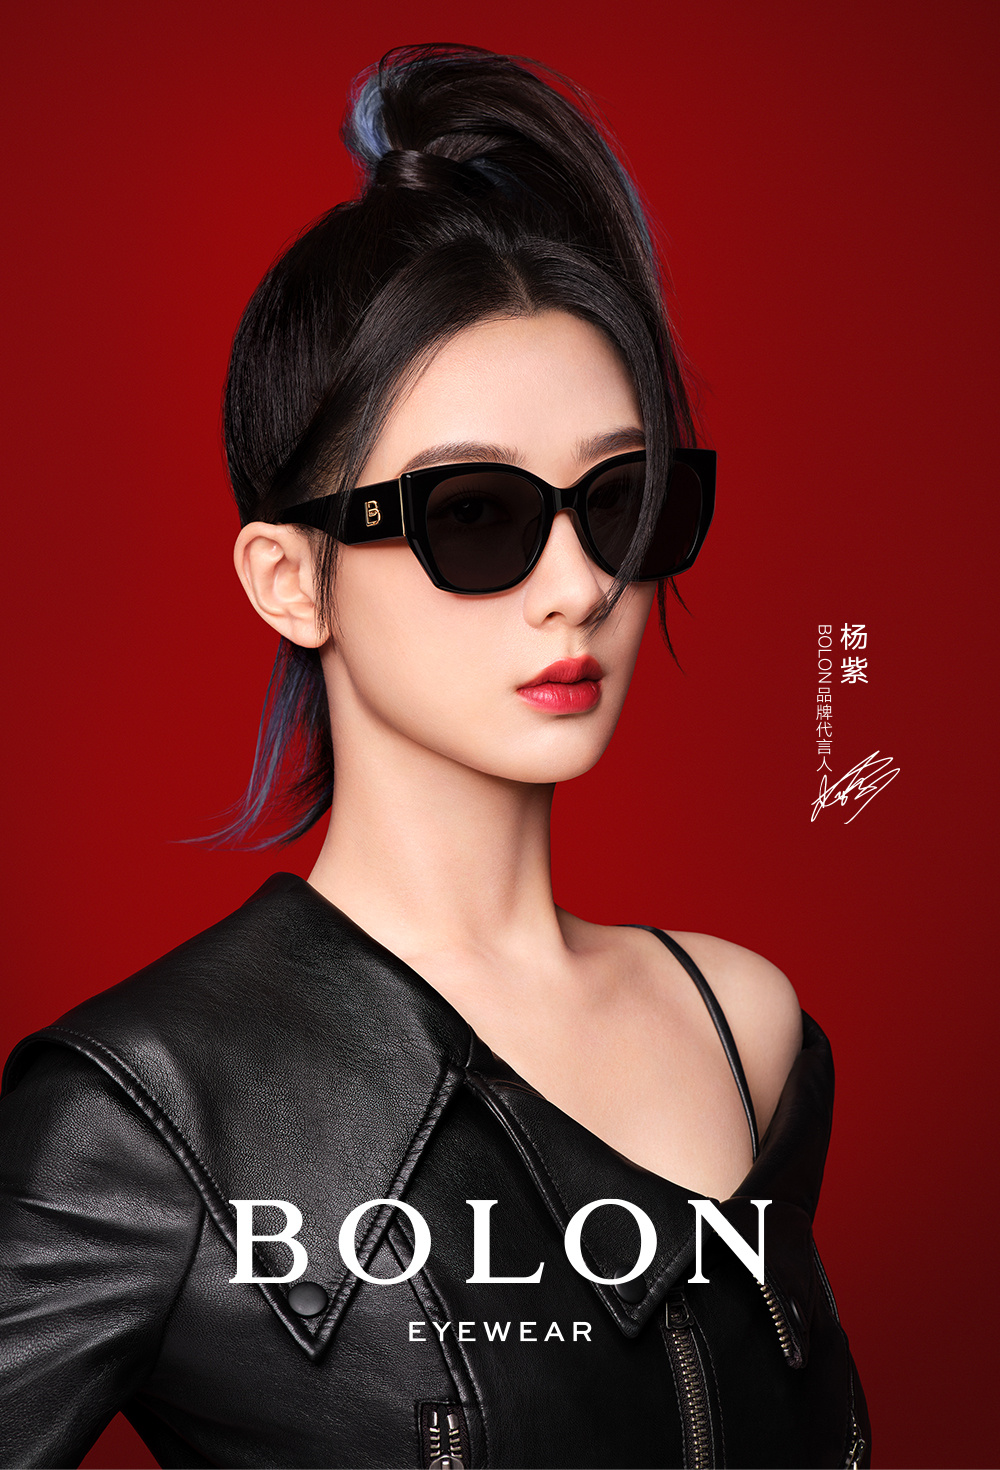 杨紫成为 BOLON 眼镜品牌代言人